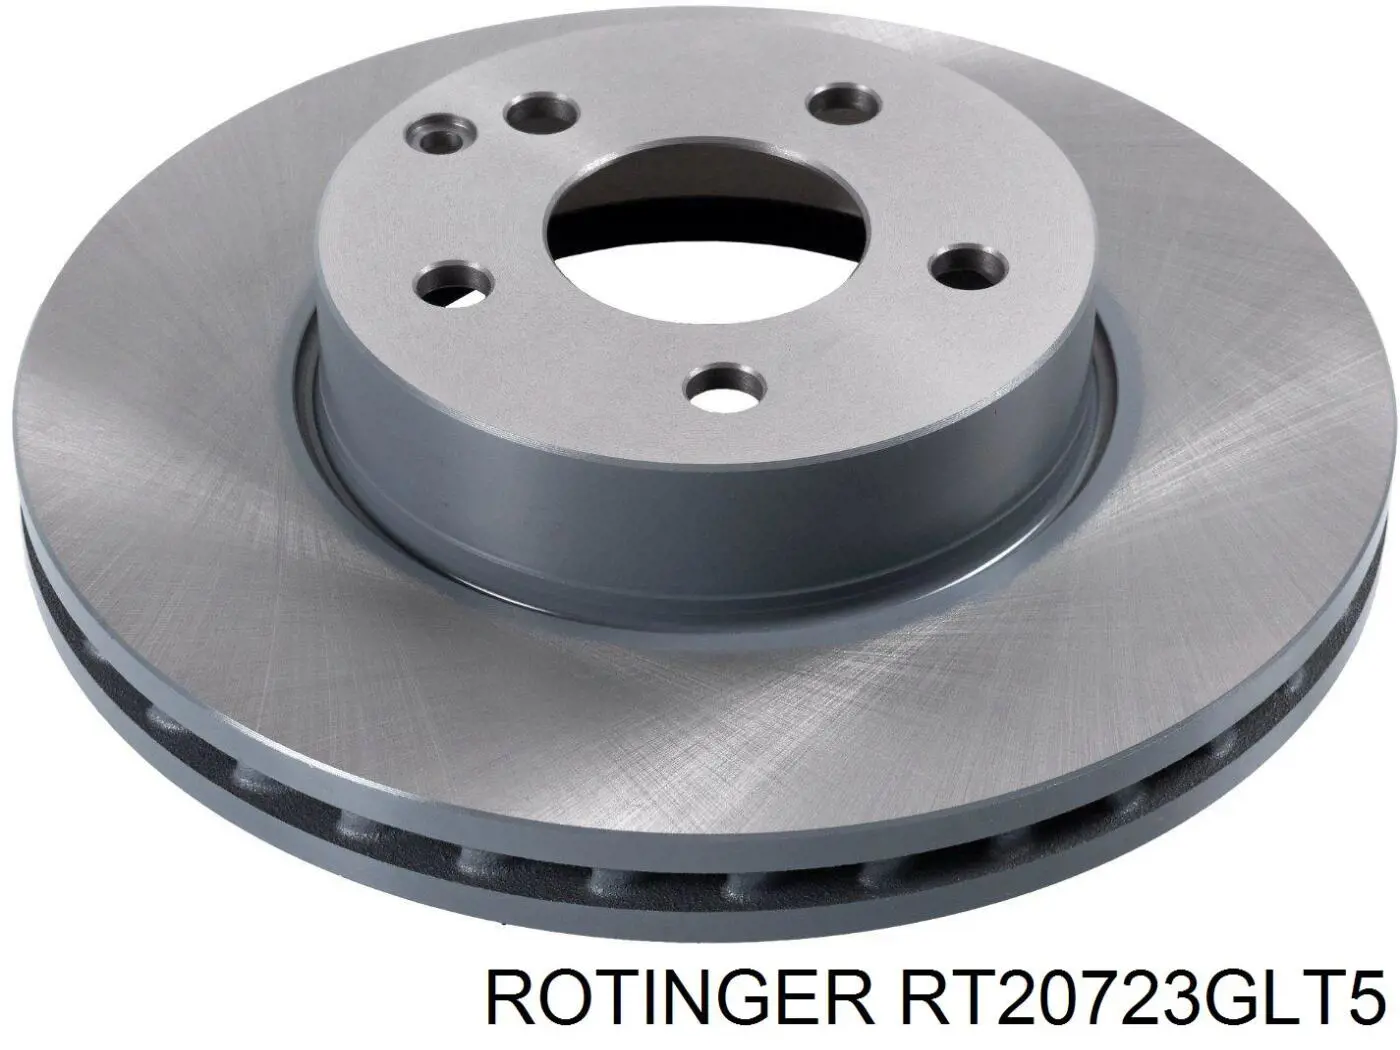 RT20723GLT5 Rotinger disco do freio dianteiro